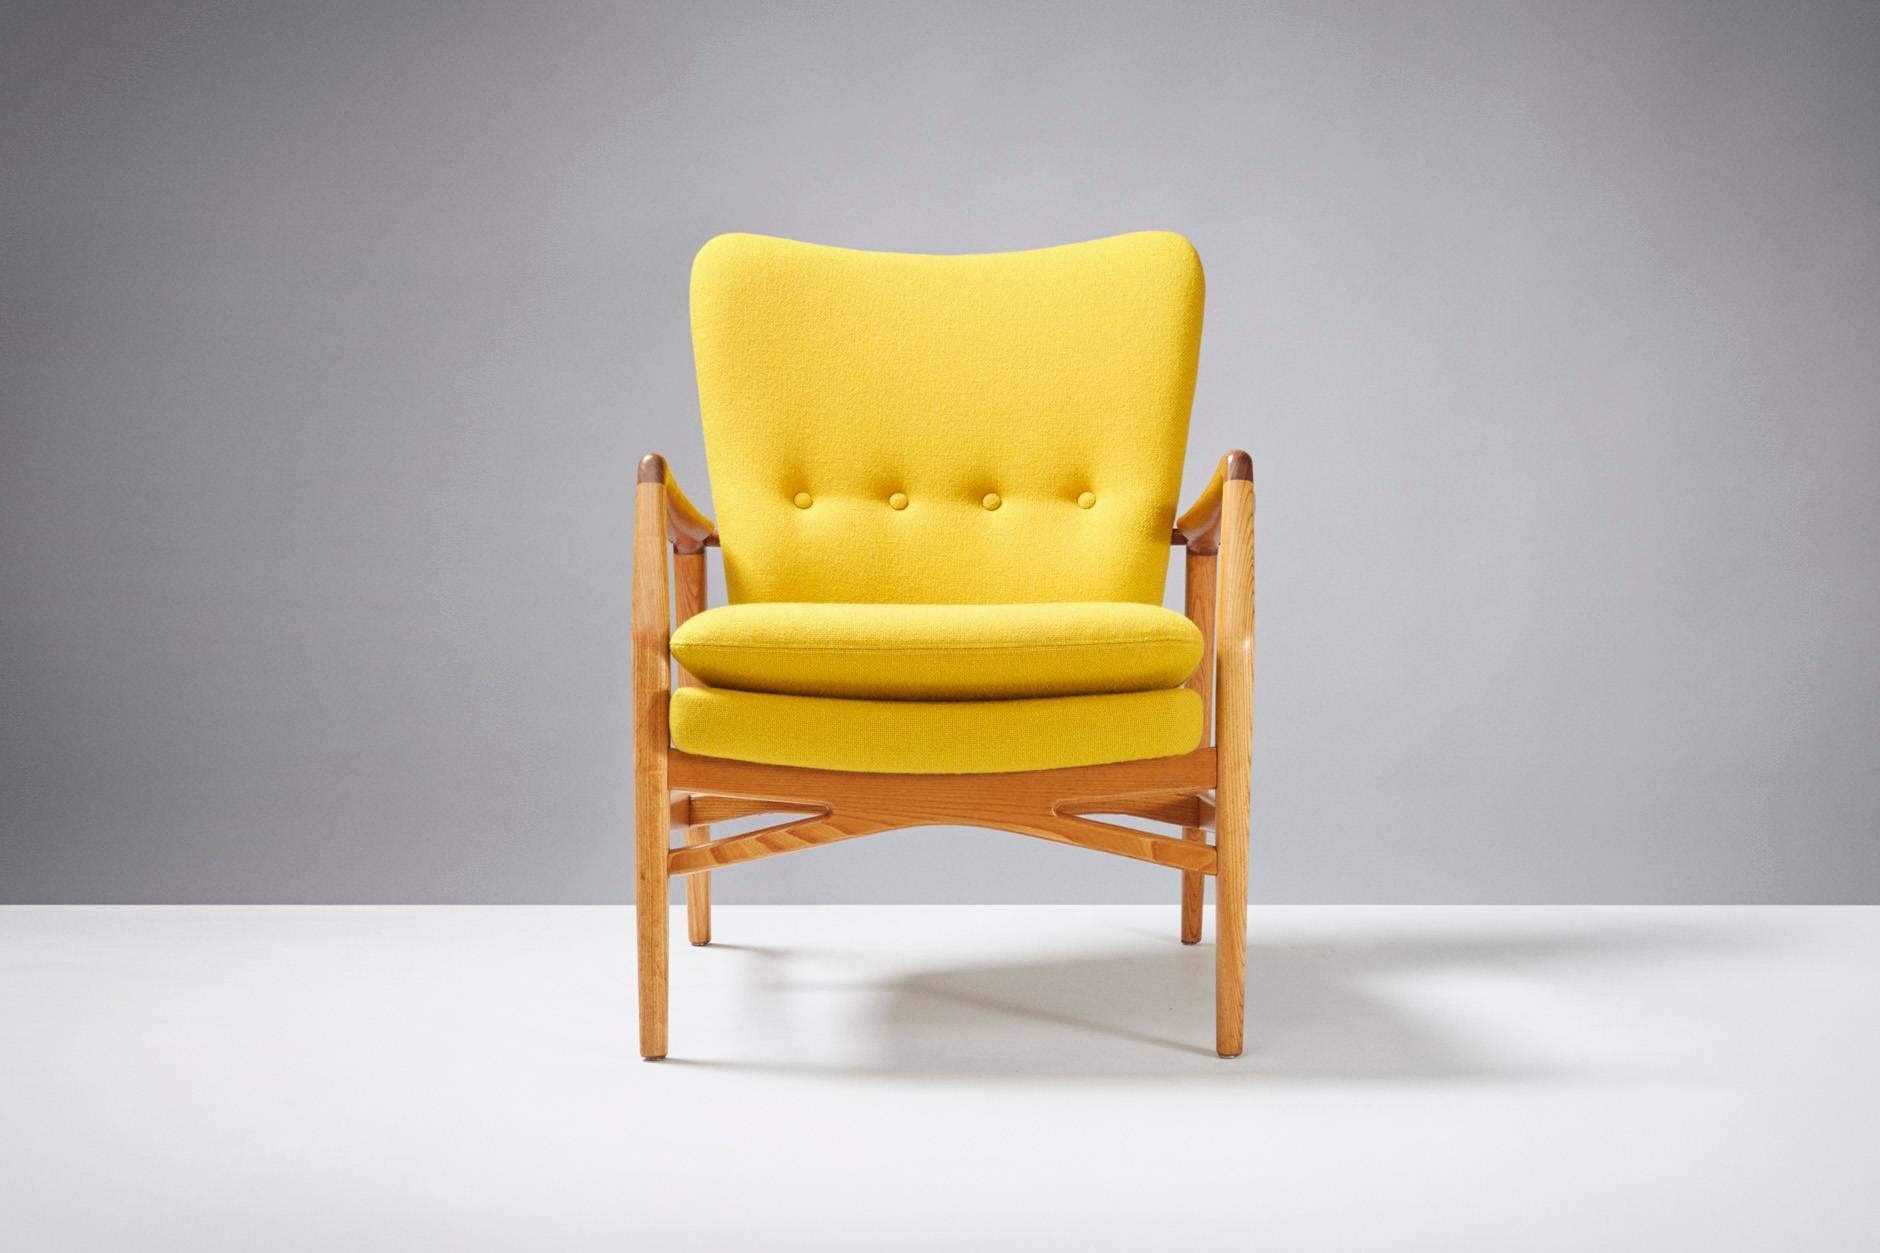 Produced by Slagelse Mobelvaerk, Denmark. Teak armrests and beech frame. Seat reupholstered in yellow Kvadrat Halingdal fabric.